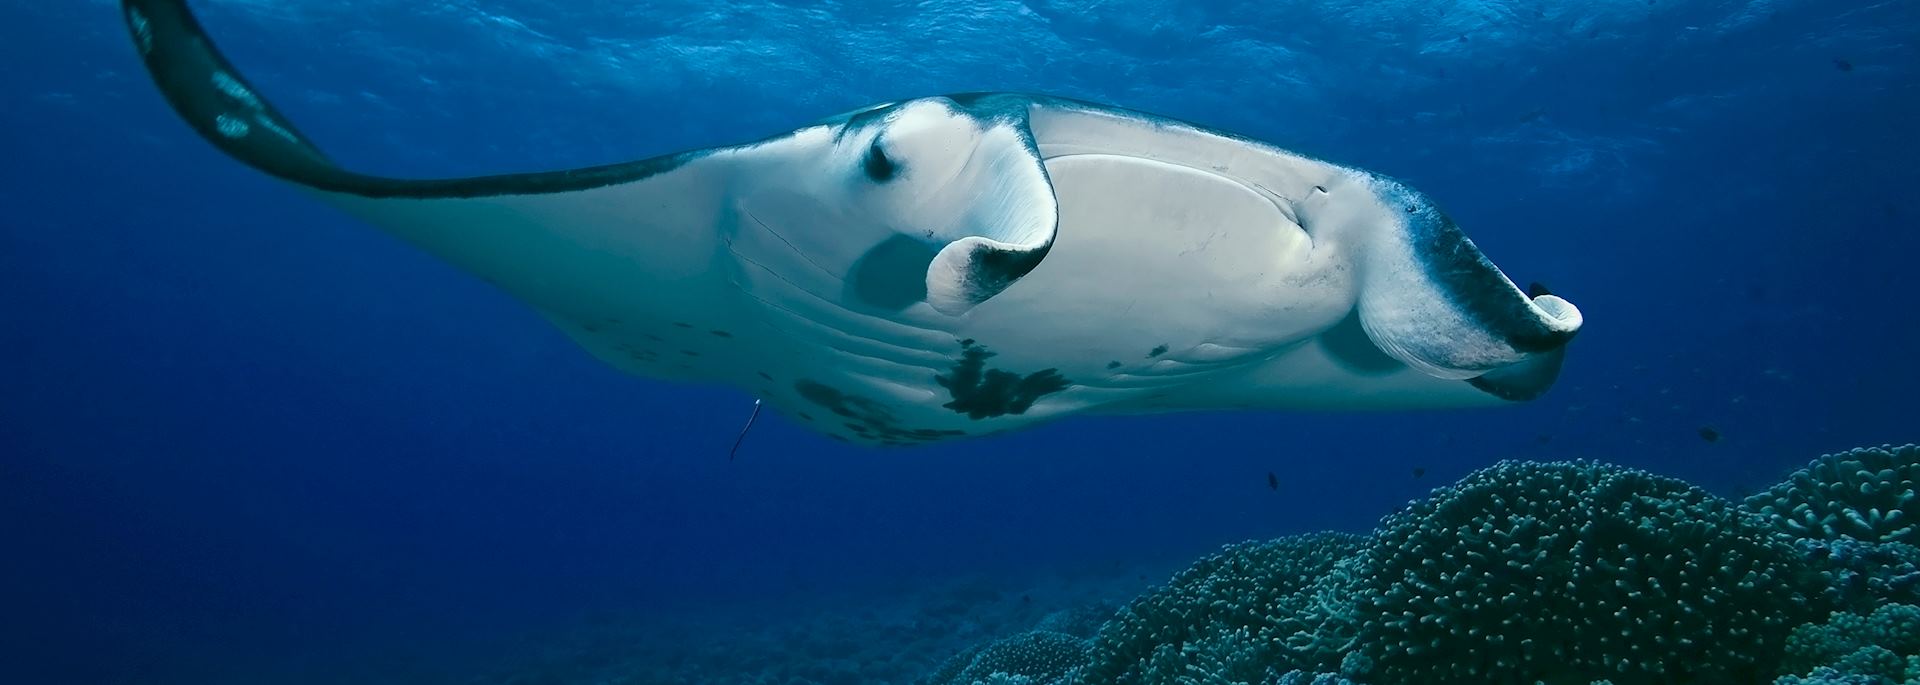 Manta ray, French Polynesia